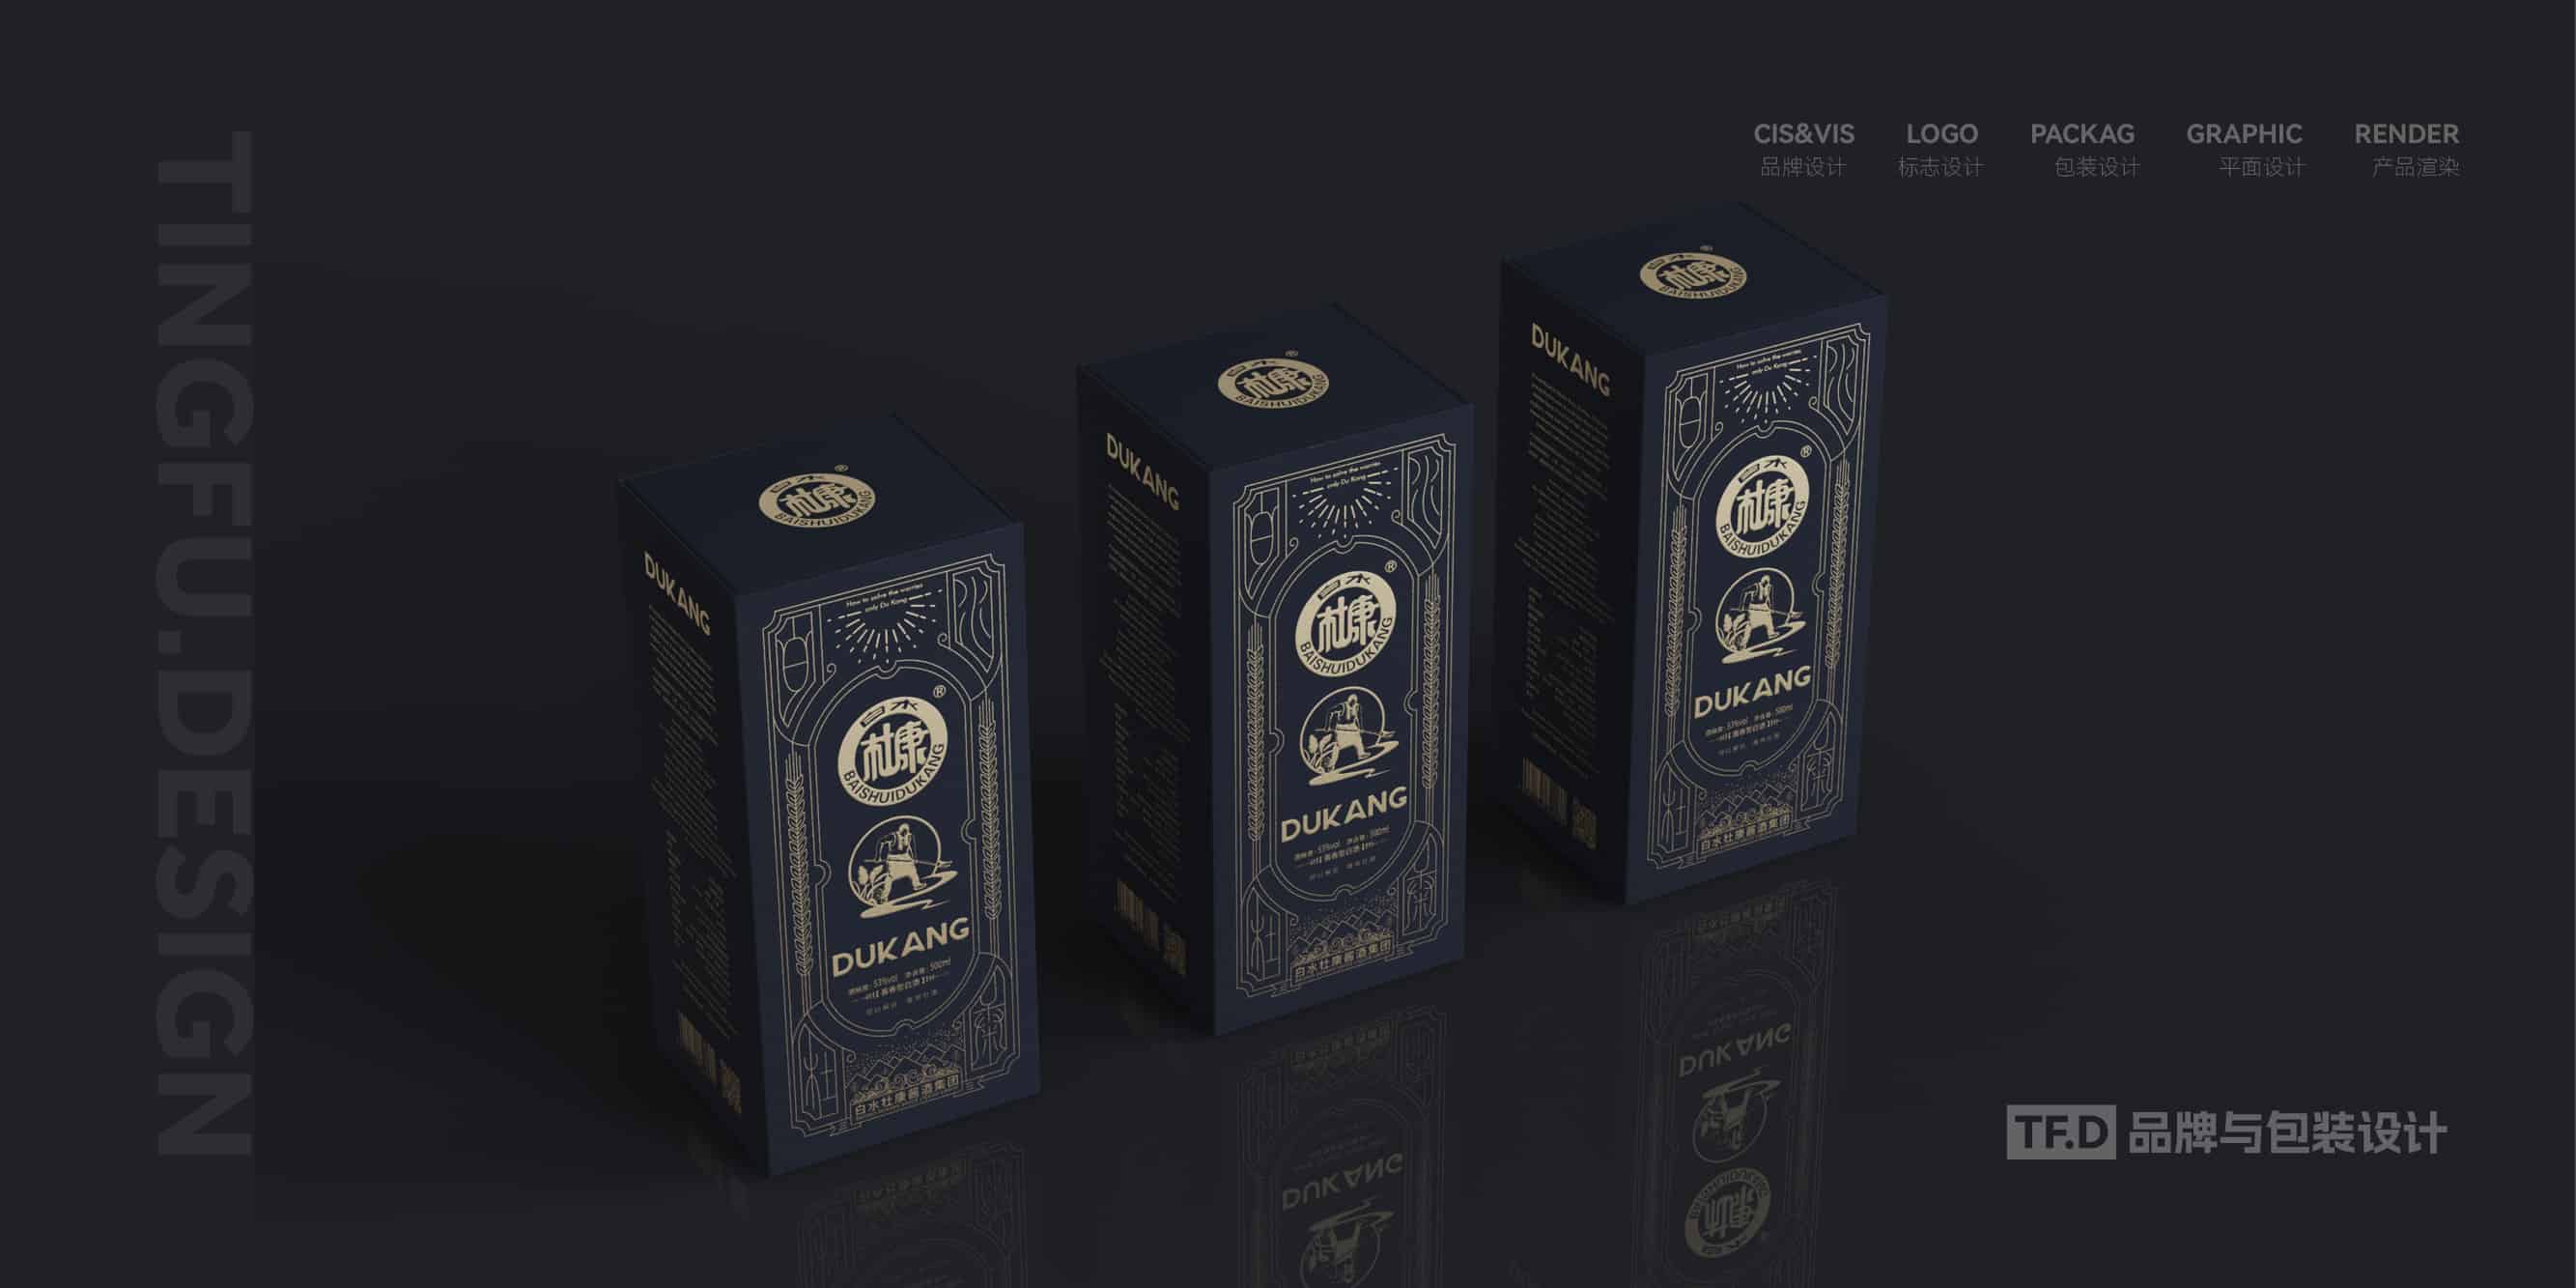 TFD品牌与包装设计-部分酒包装设计案例5-tuya.jpg